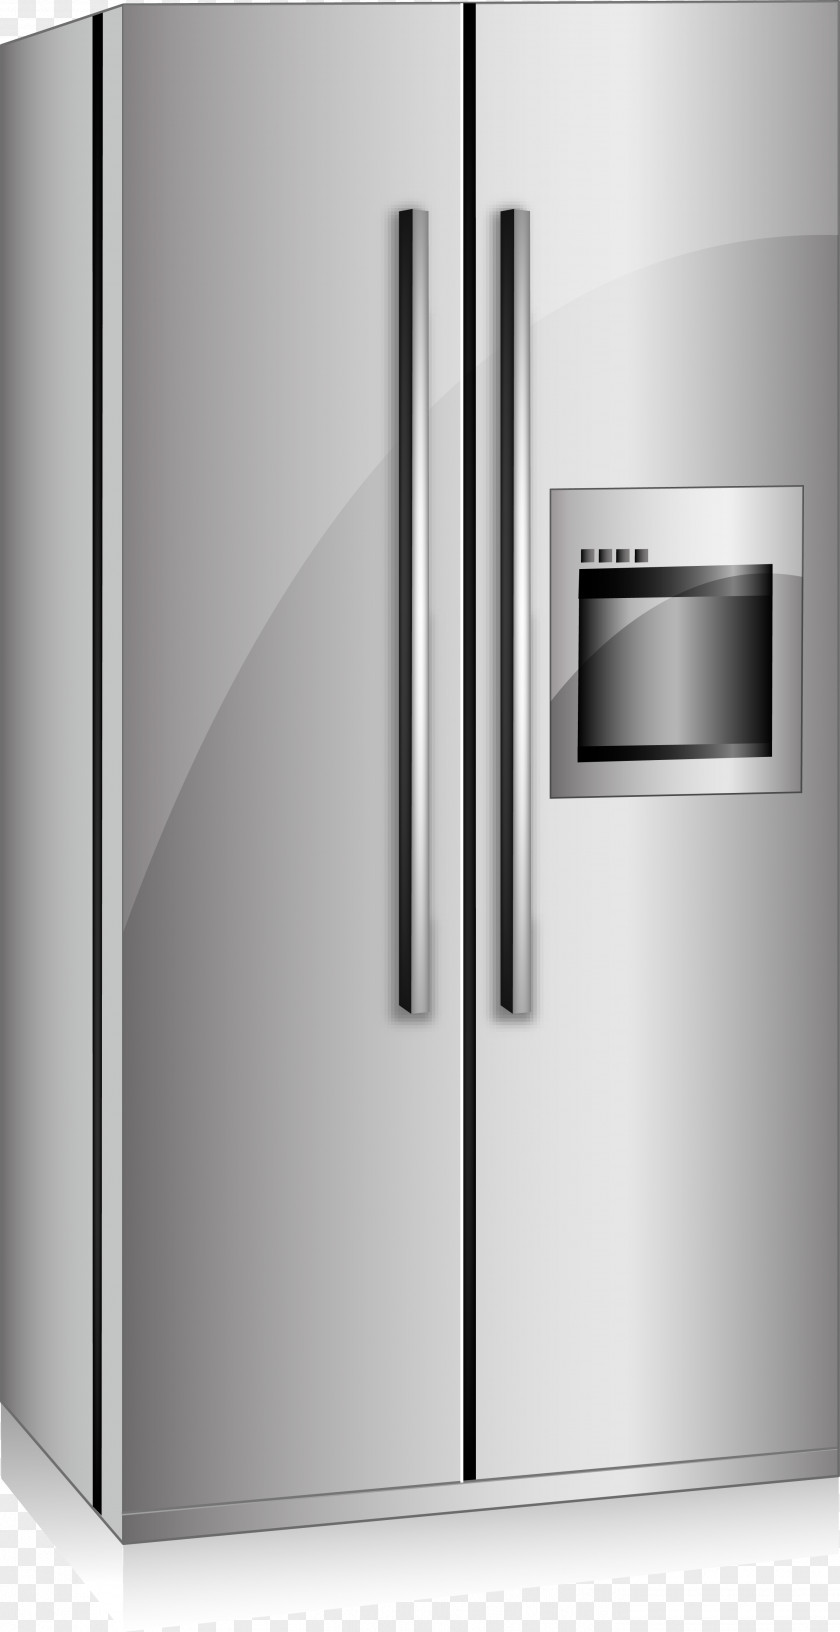 Silver Intelligent On The Door Refrigerator Model Refrigeration Clip Art PNG